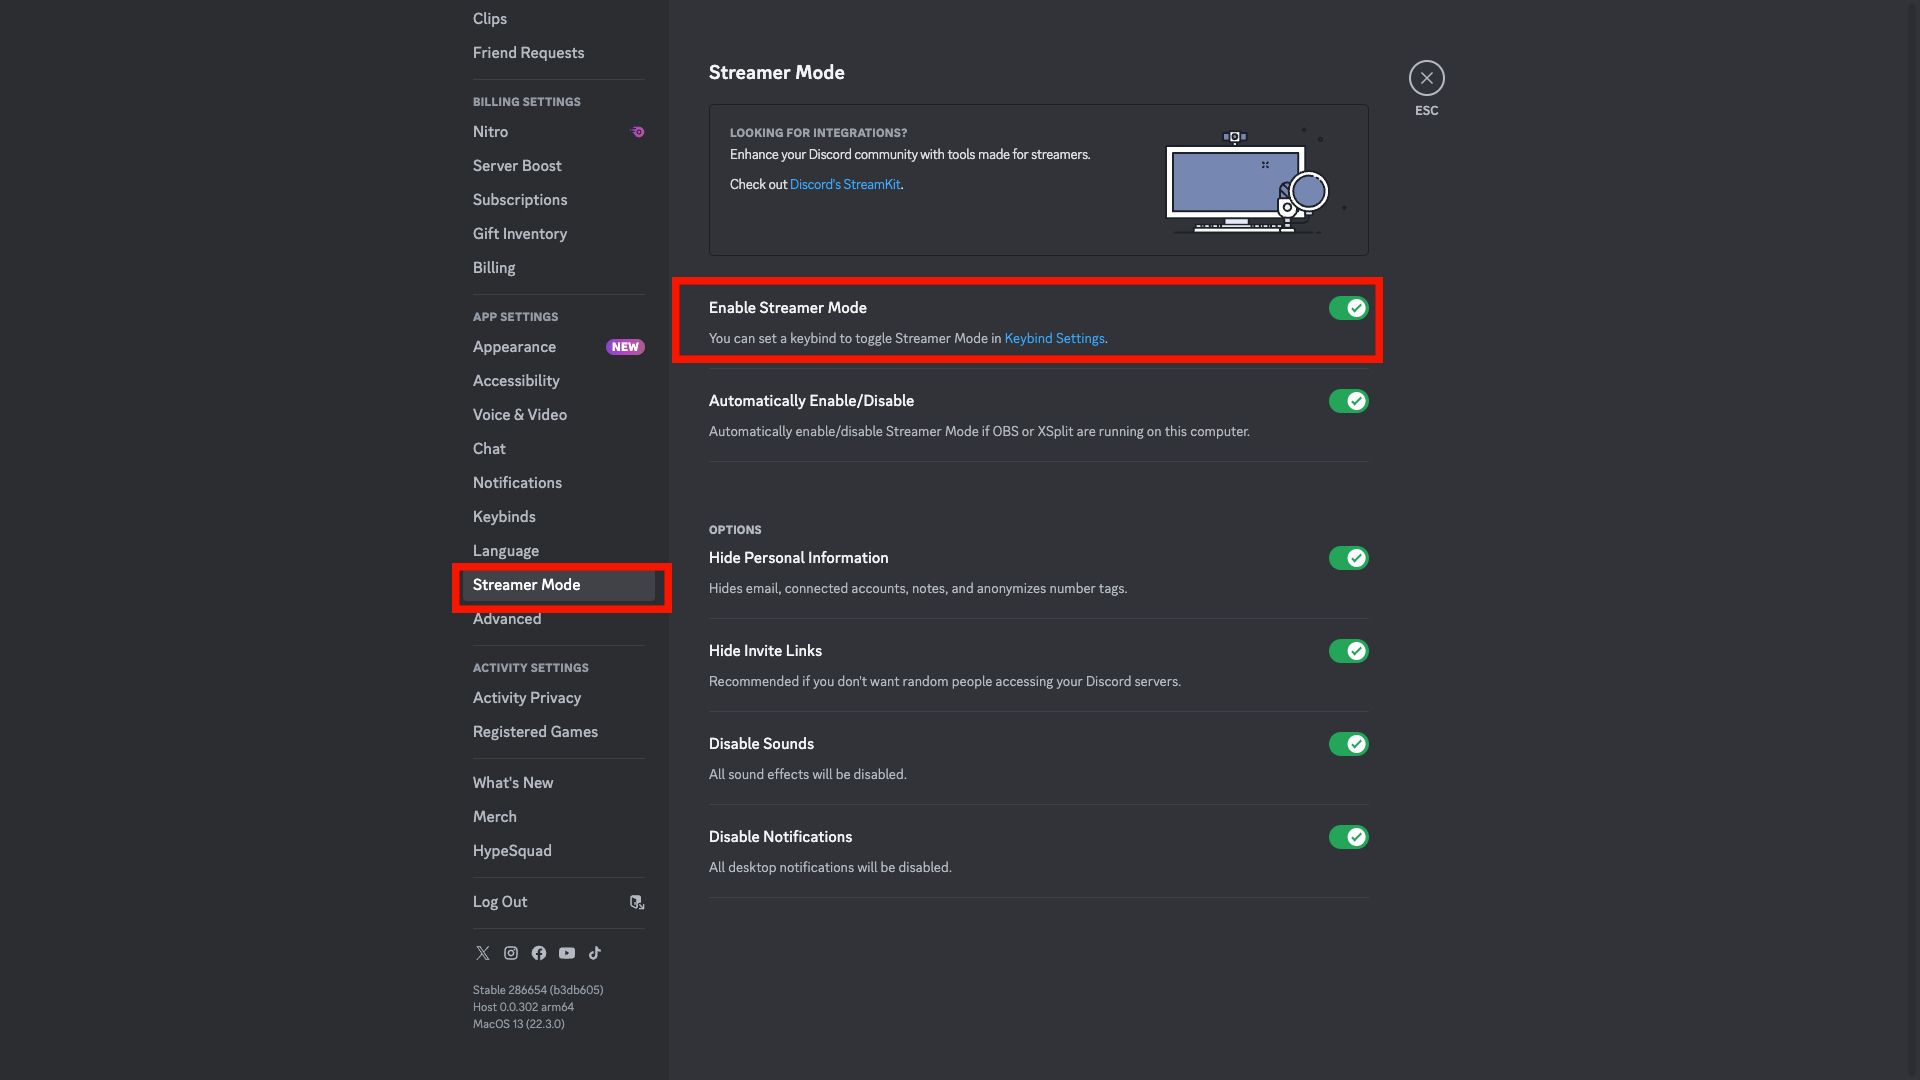   Captura de tela das configurações do modo Streamer do Discord